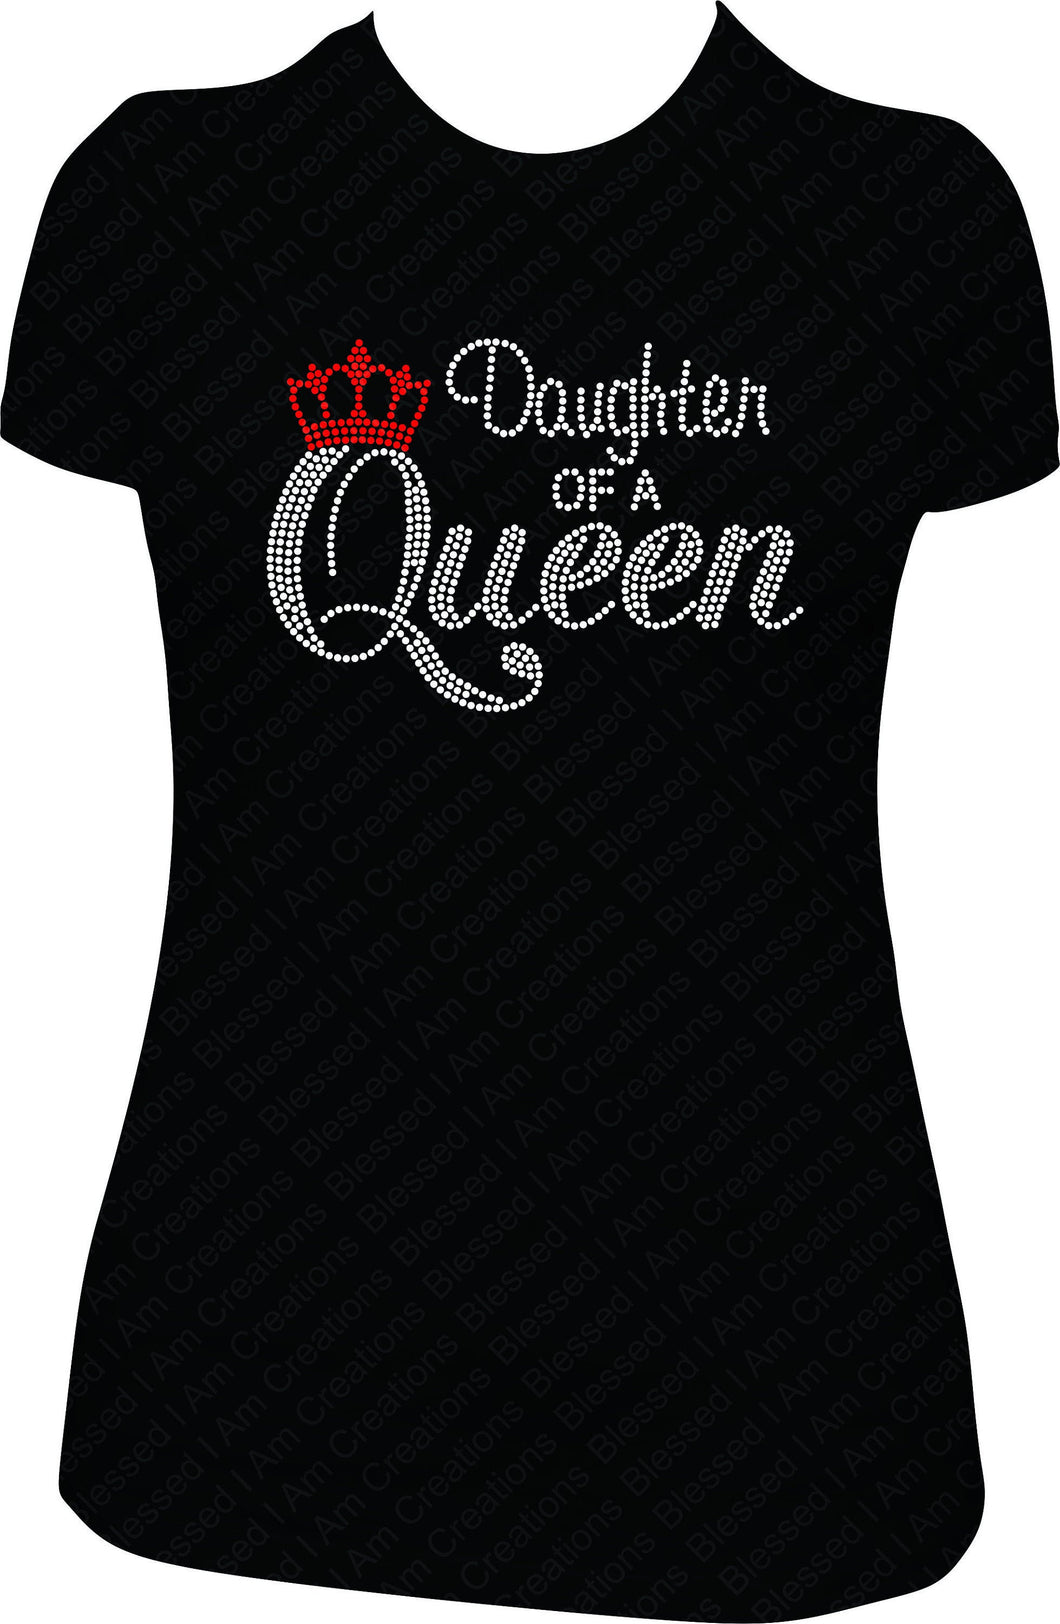 Daughter rhinestone shirt, Queen birthday shirt, bling shirt, rhinestone shirt